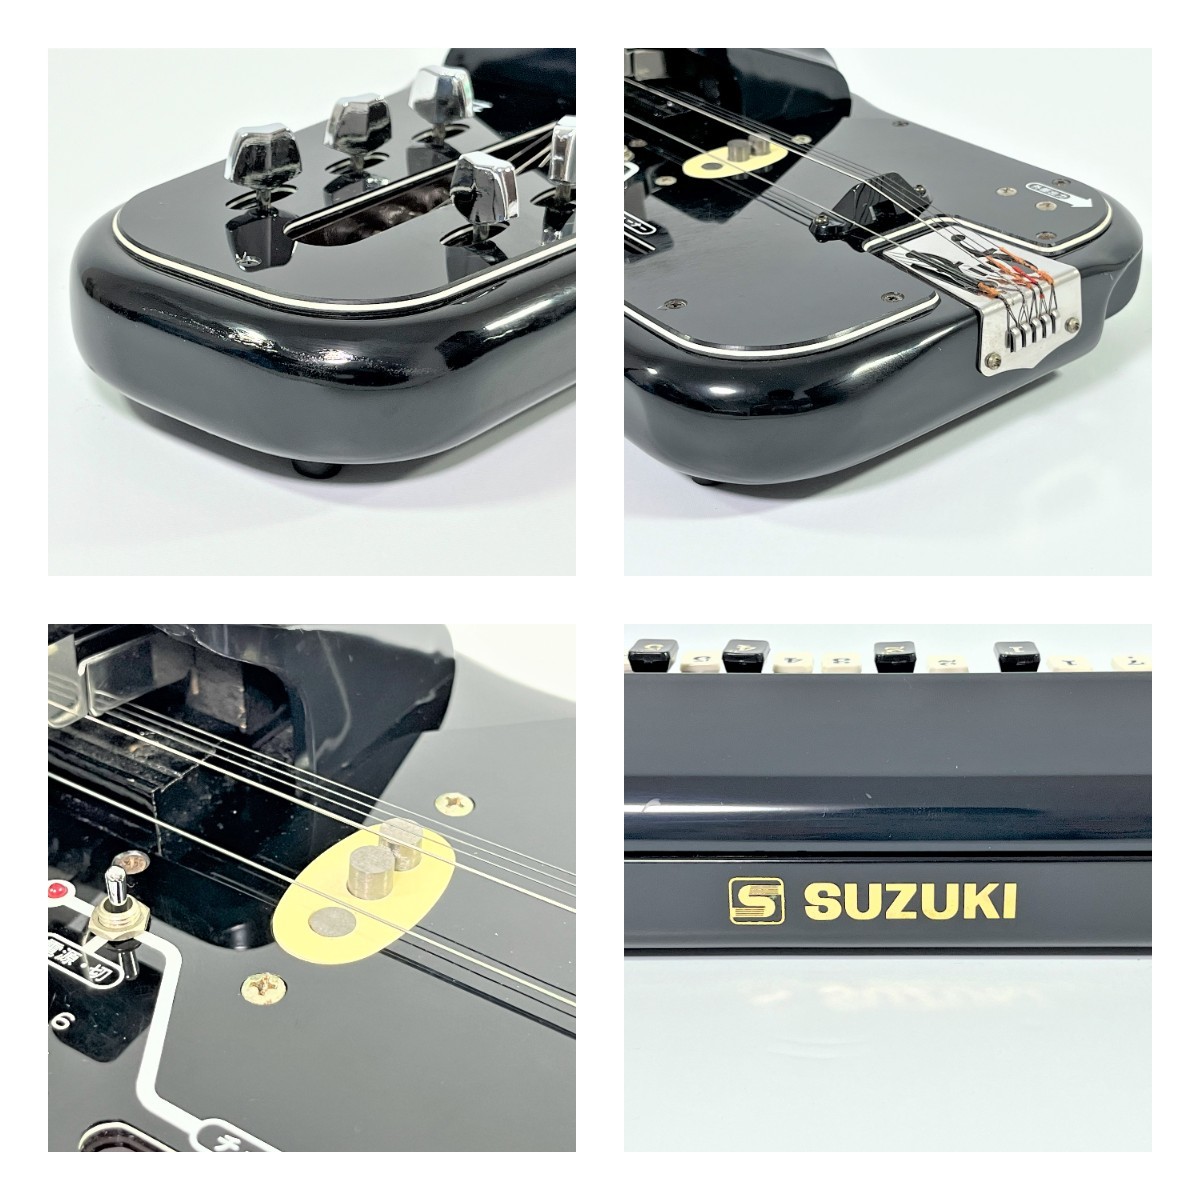 SUZUKI スズキ 蘭 ブラック 限定色 和楽器 大正琴 ハードケース付属●R511042